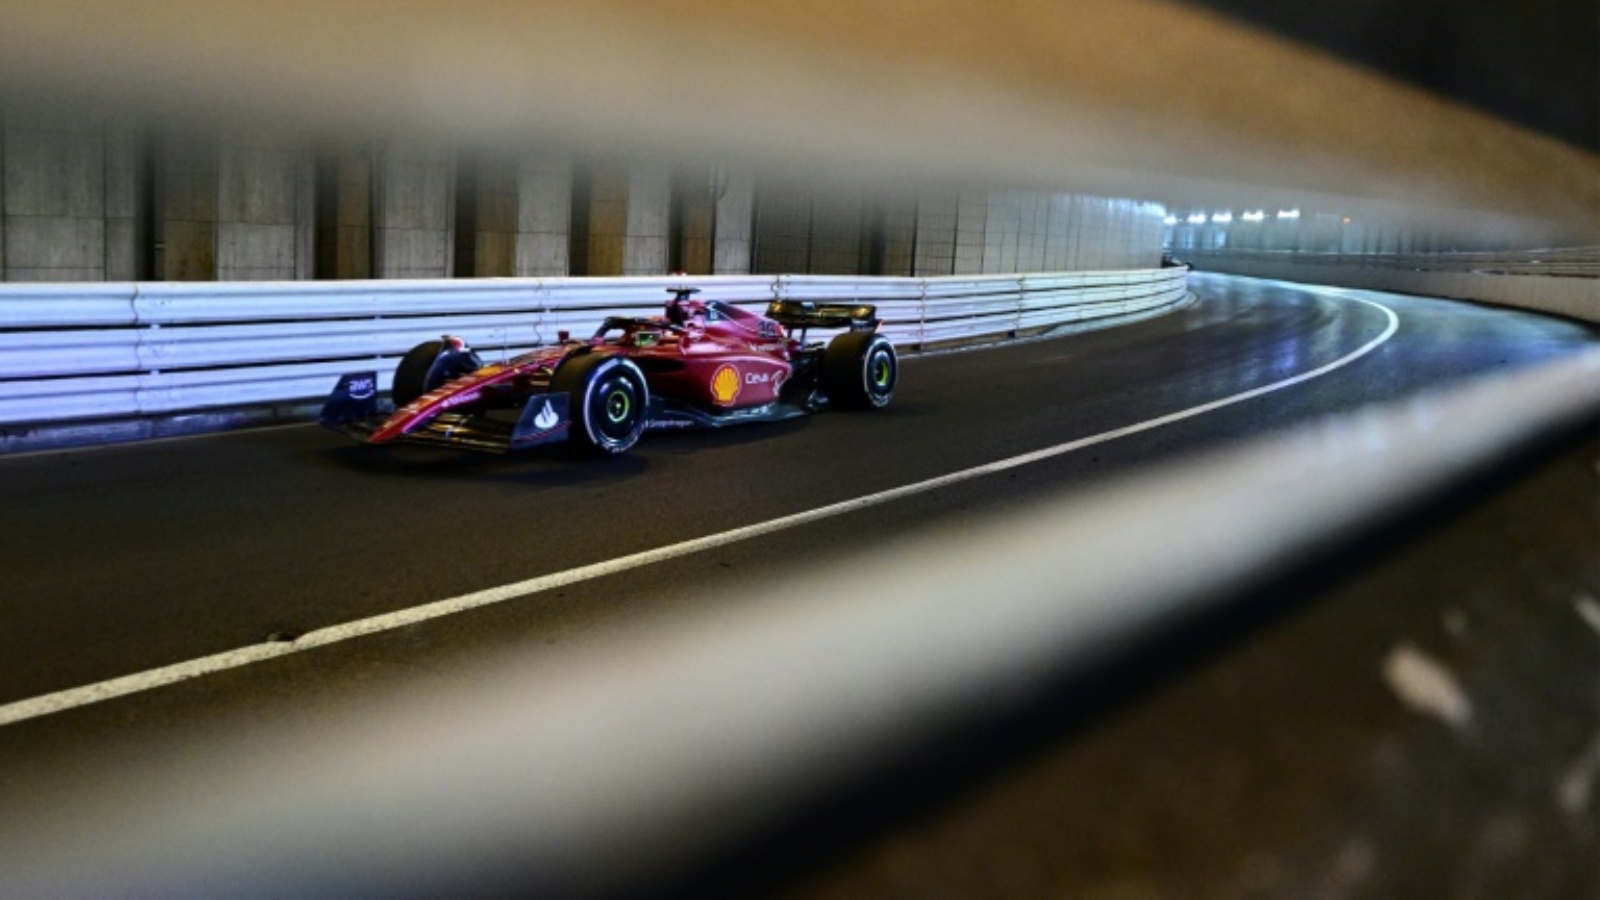 سائق فيراري شارل لوكلير من موناكو داخل النفق خلال سباق جائزة موناكو الكبرى في فورمولا واحد. 29 مايو 2022